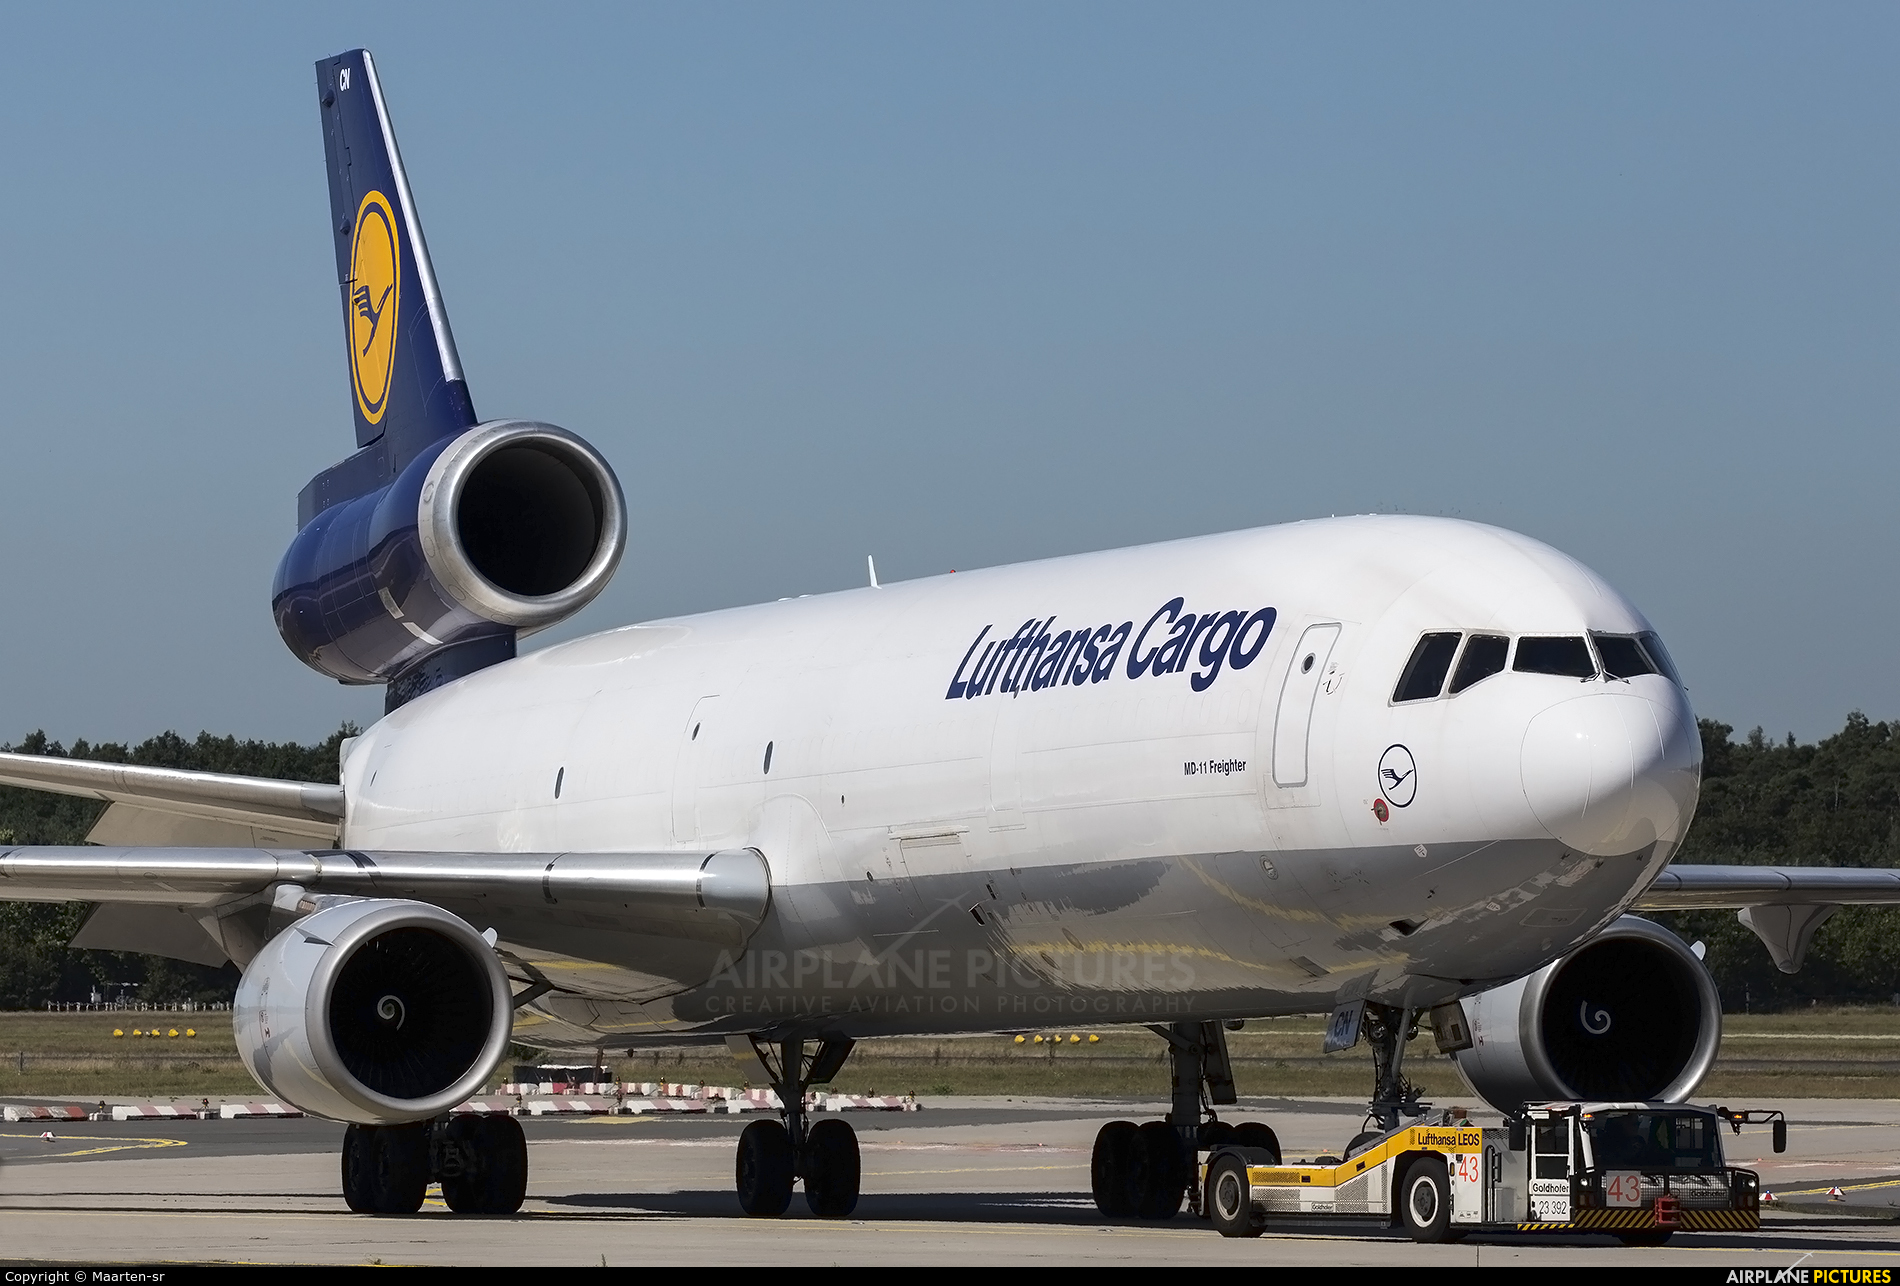 Lufthansa Cargo D-ALCH aircraft at Frankfurt